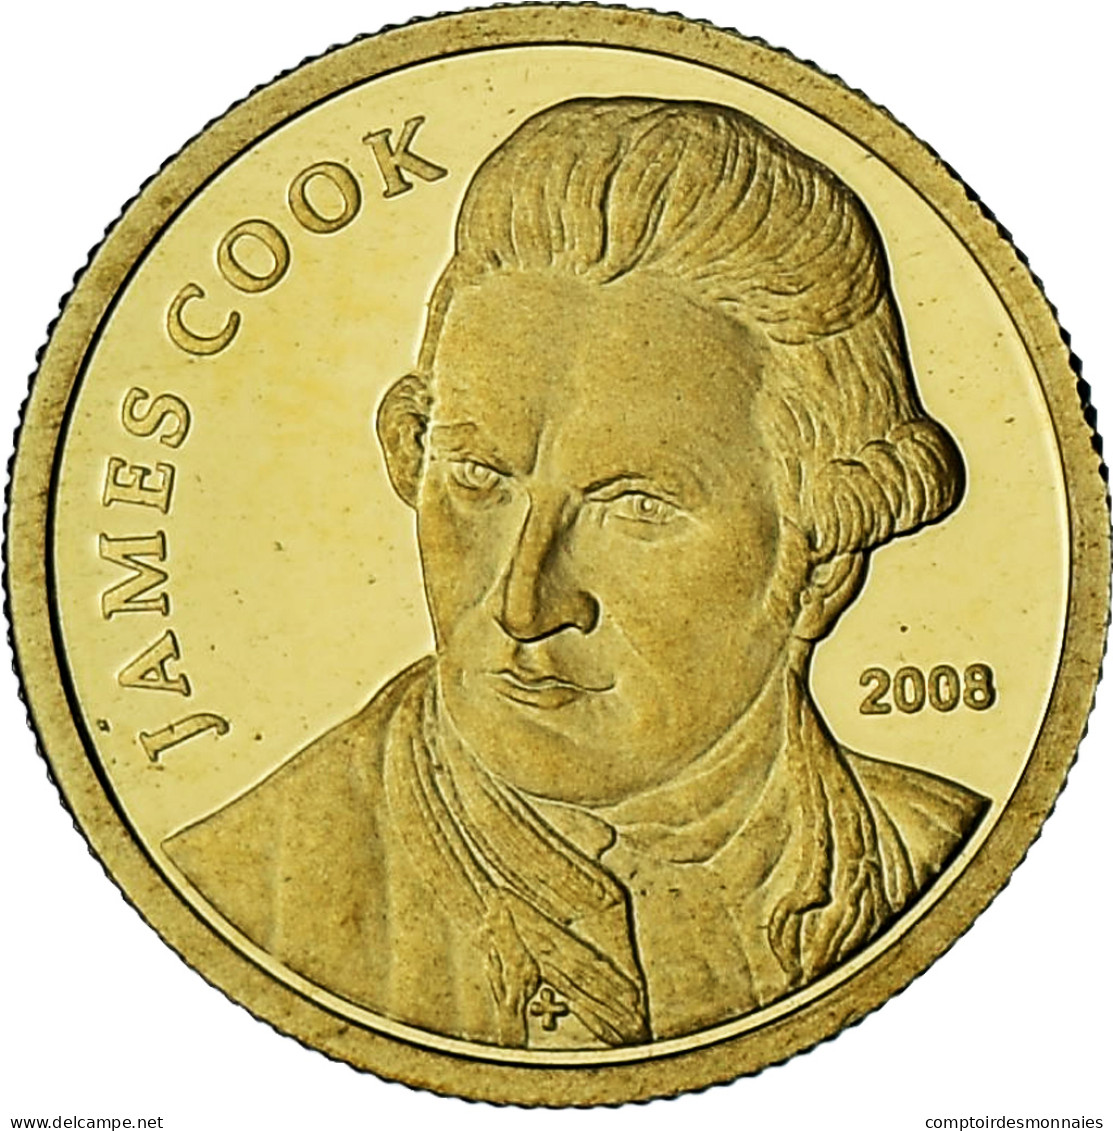 Îles Cook, Elizabeth II, James Cook, 10 Dollars, 2008, BE, FDC, Or - Islas Cook